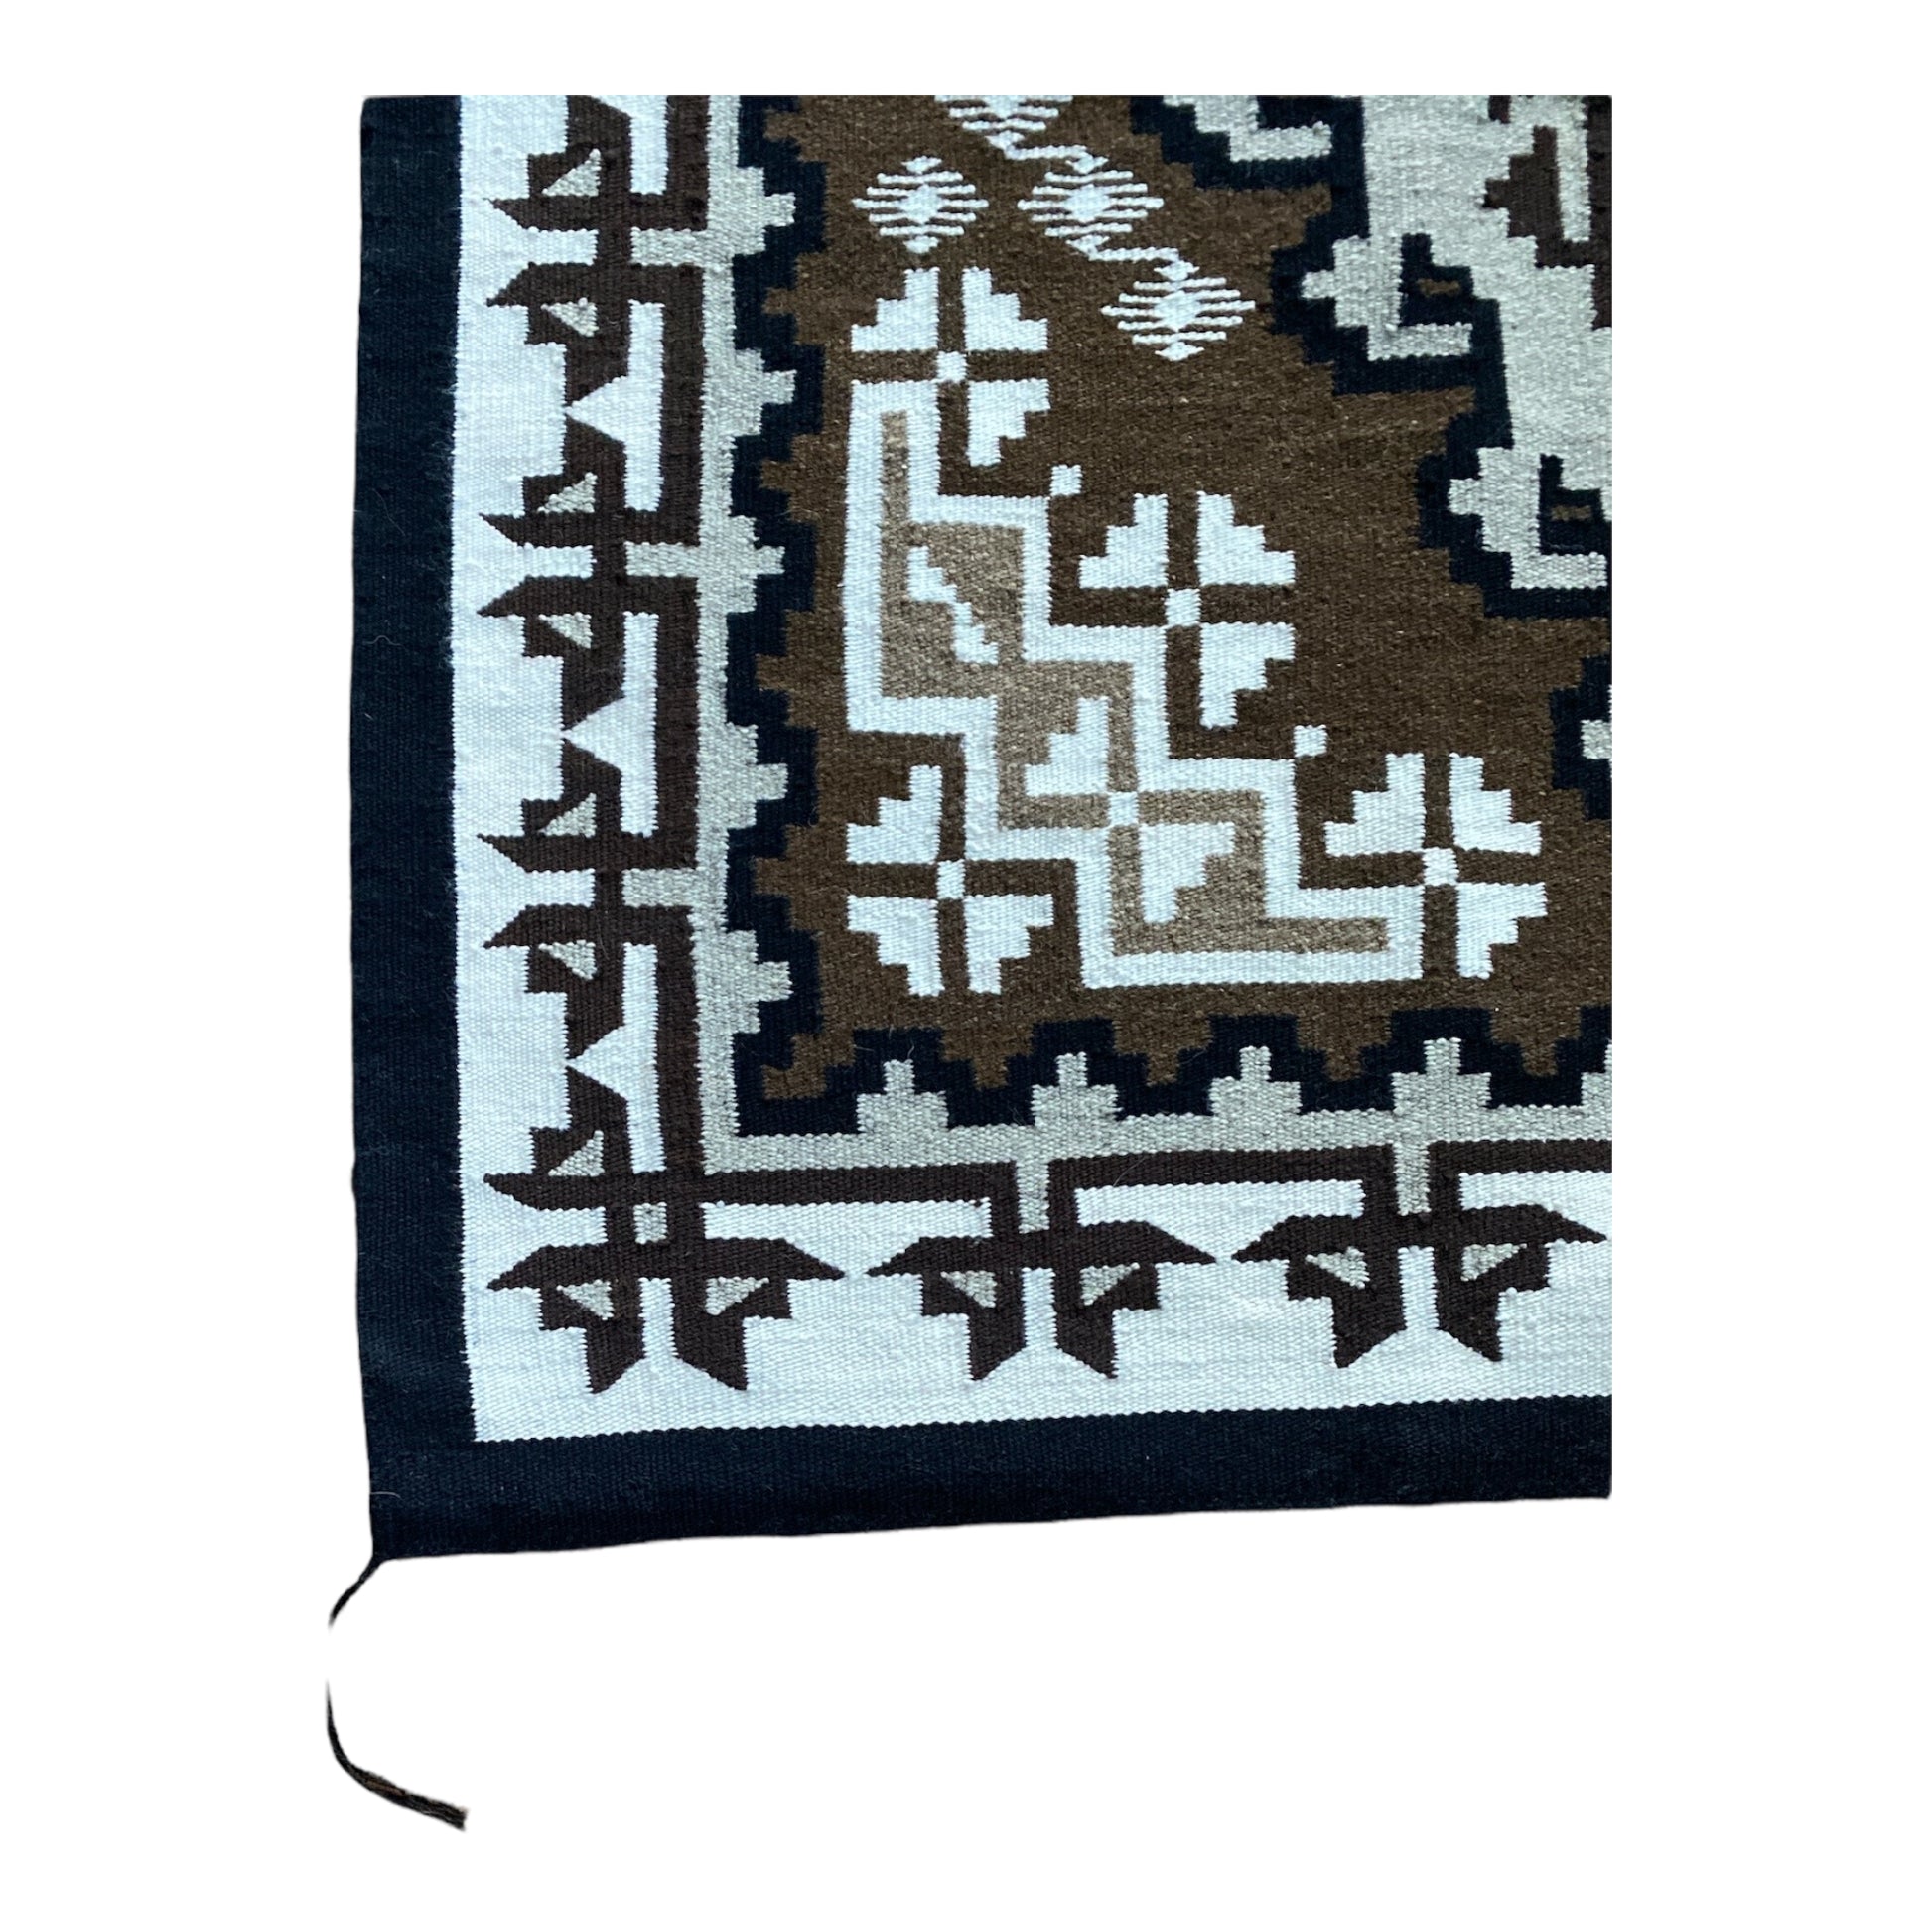 Betty Charley Navajo, Two Grey Hills Navajo weaving, navajo rug for sale, telluride furnishings, telluride gallery